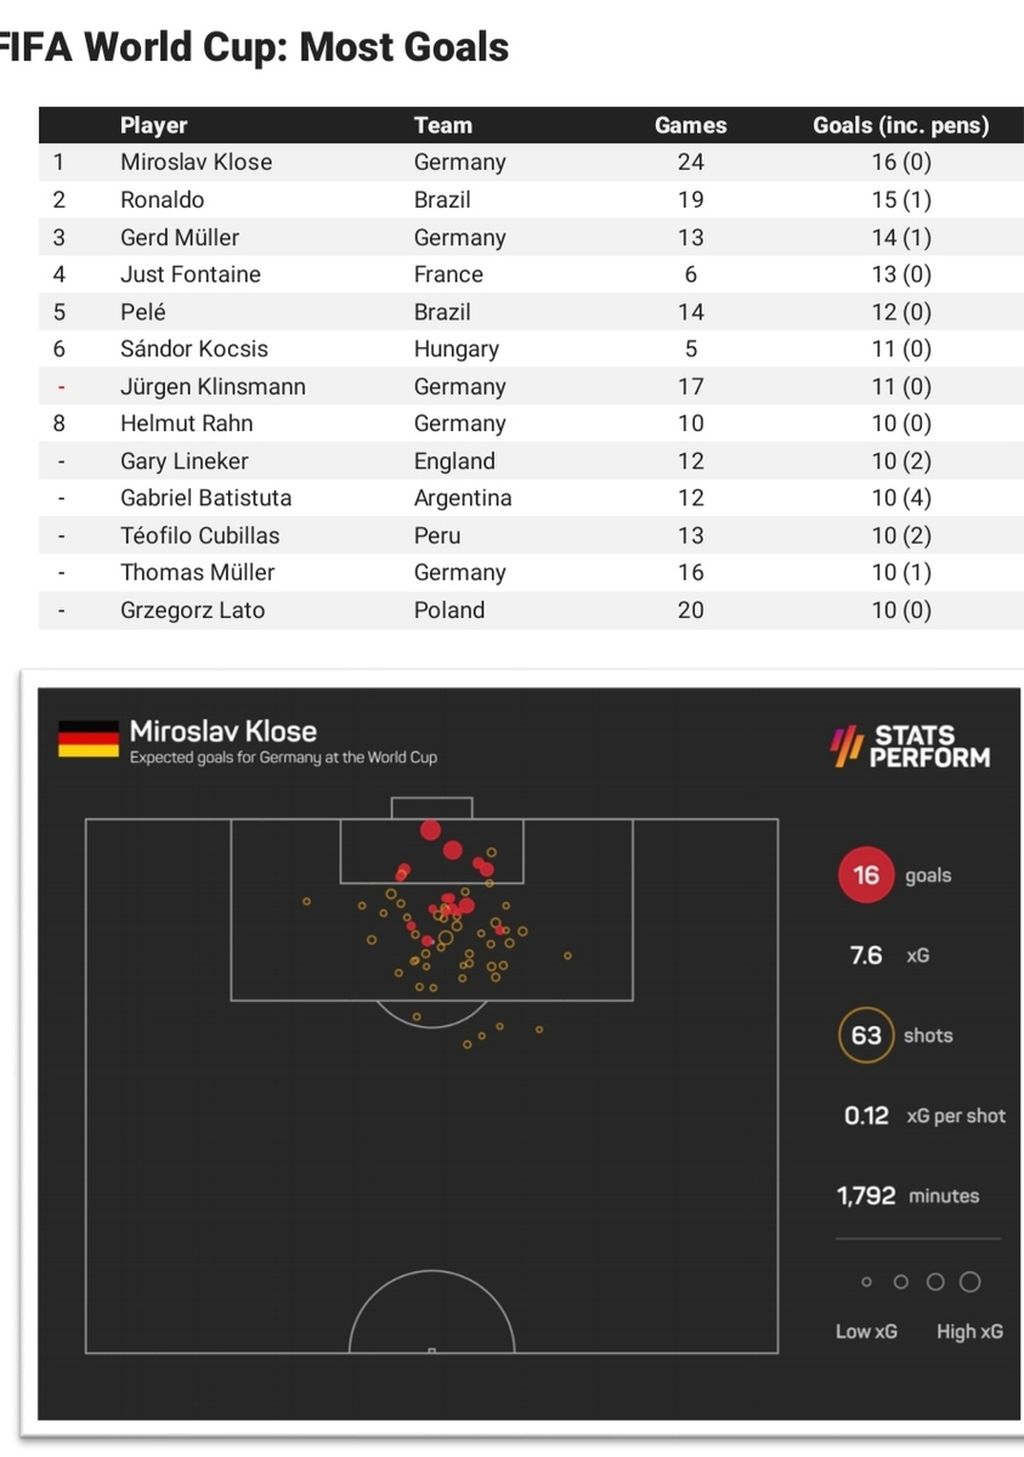 Daftar pencetak gol terbanyak sepanjang masa di Piala Dunia.